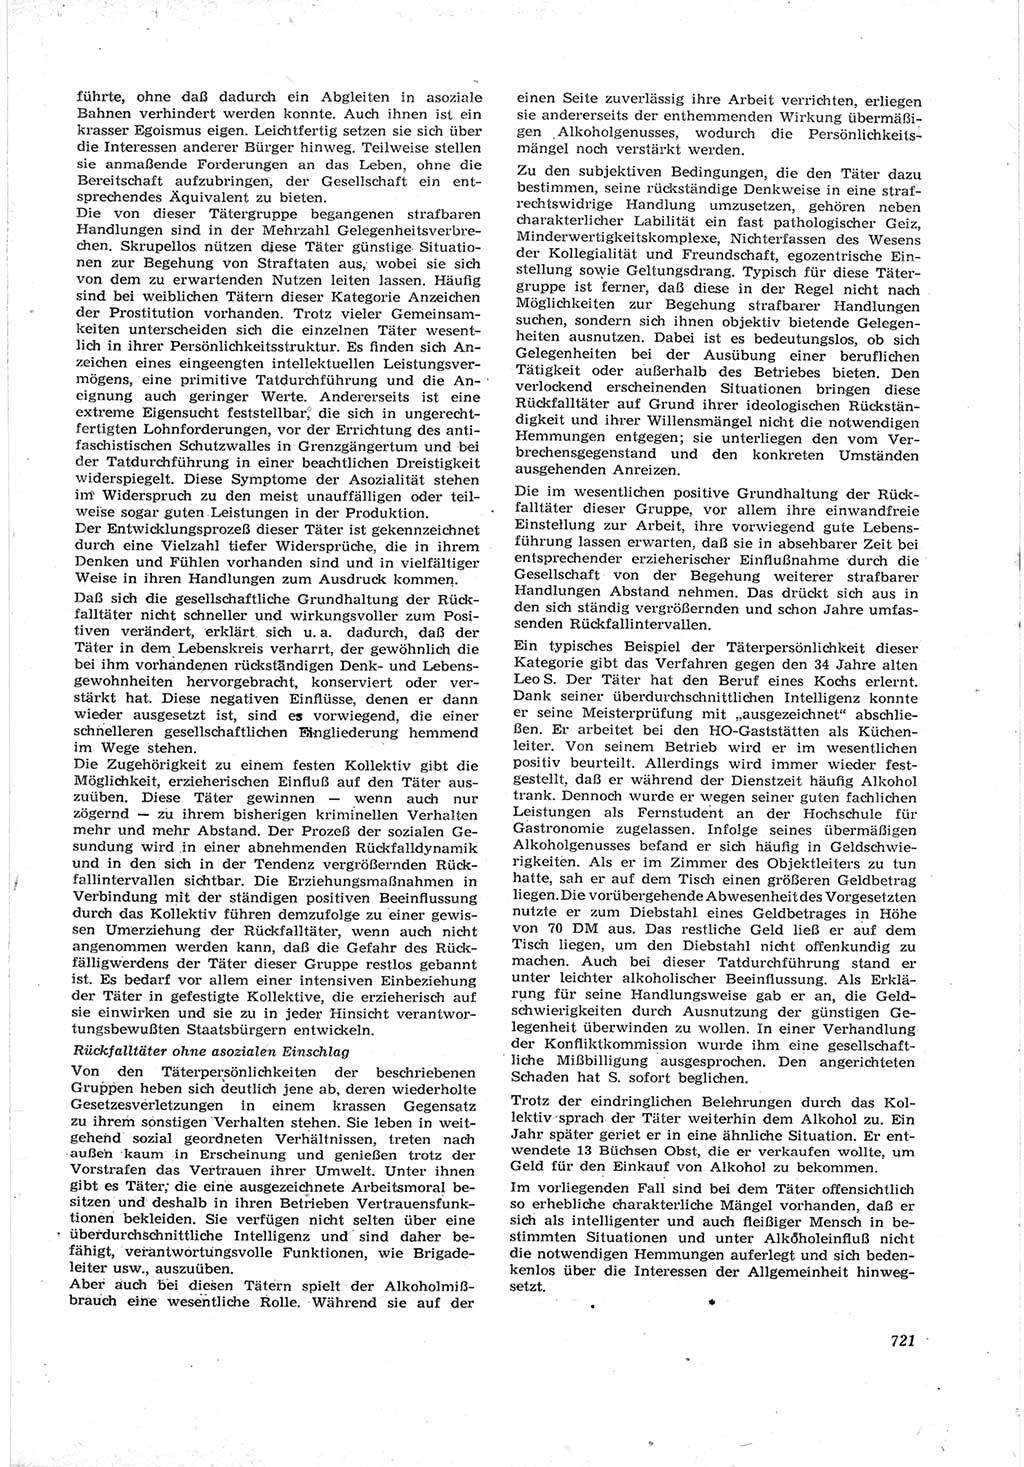 Neue Justiz (NJ), Zeitschrift für Recht und Rechtswissenschaft [Deutsche Demokratische Republik (DDR)], 17. Jahrgang 1963, Seite 721 (NJ DDR 1963, S. 721)